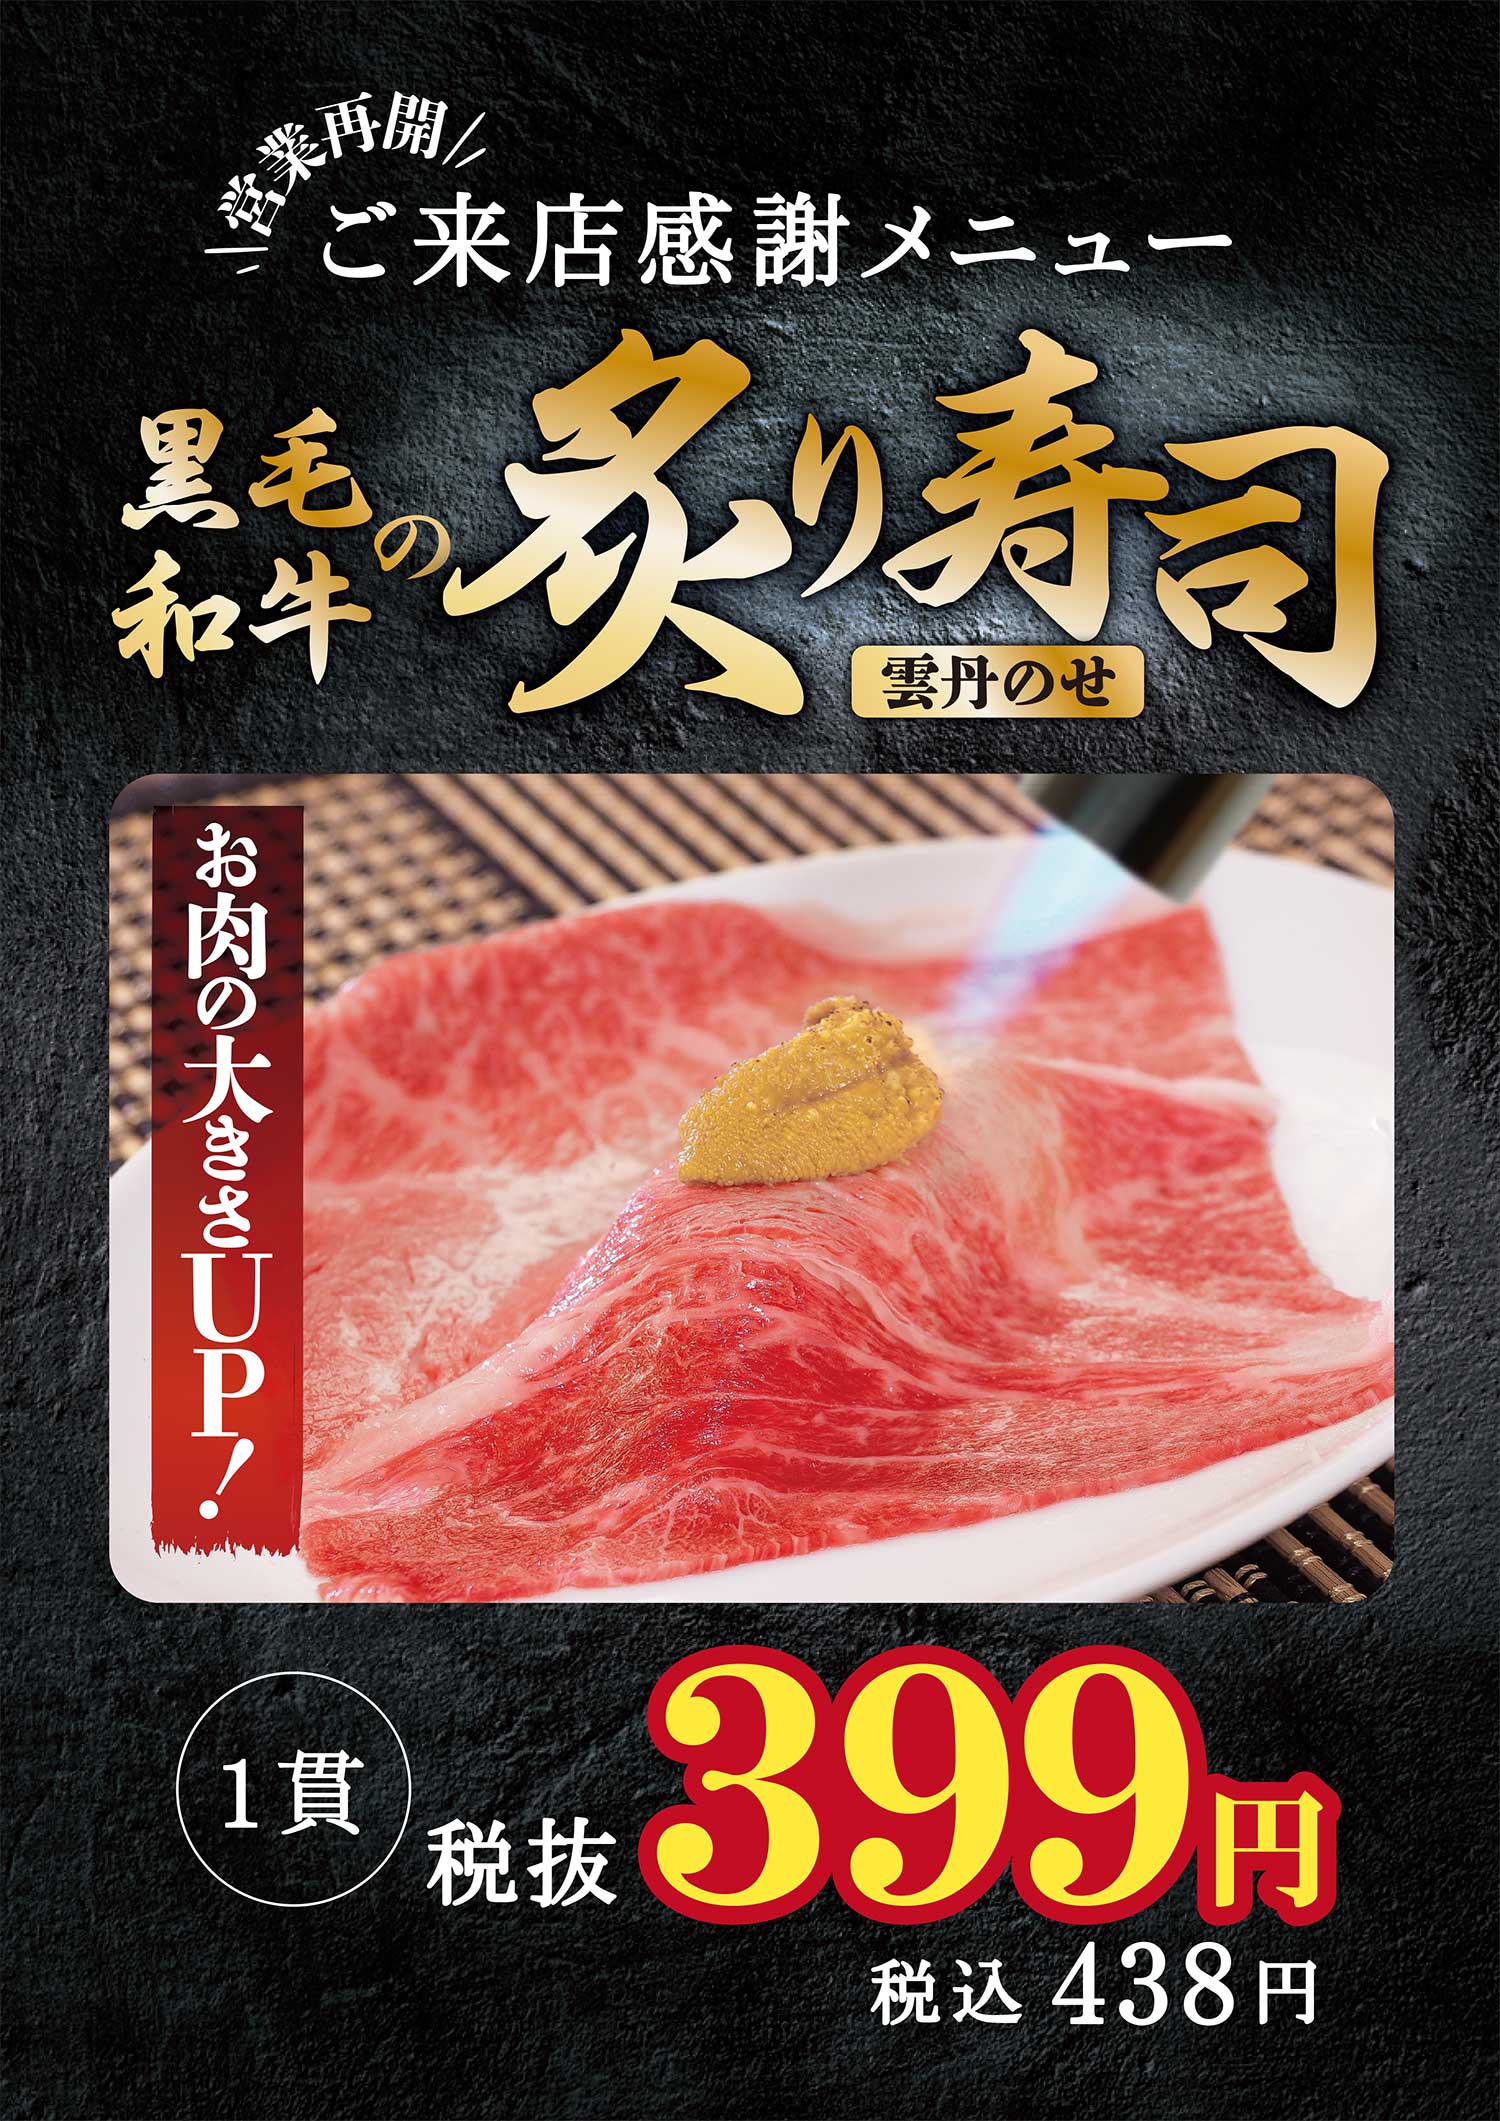 豪華黒毛和牛と雲丹寿司を特別価格399円で提供して生産者応援！